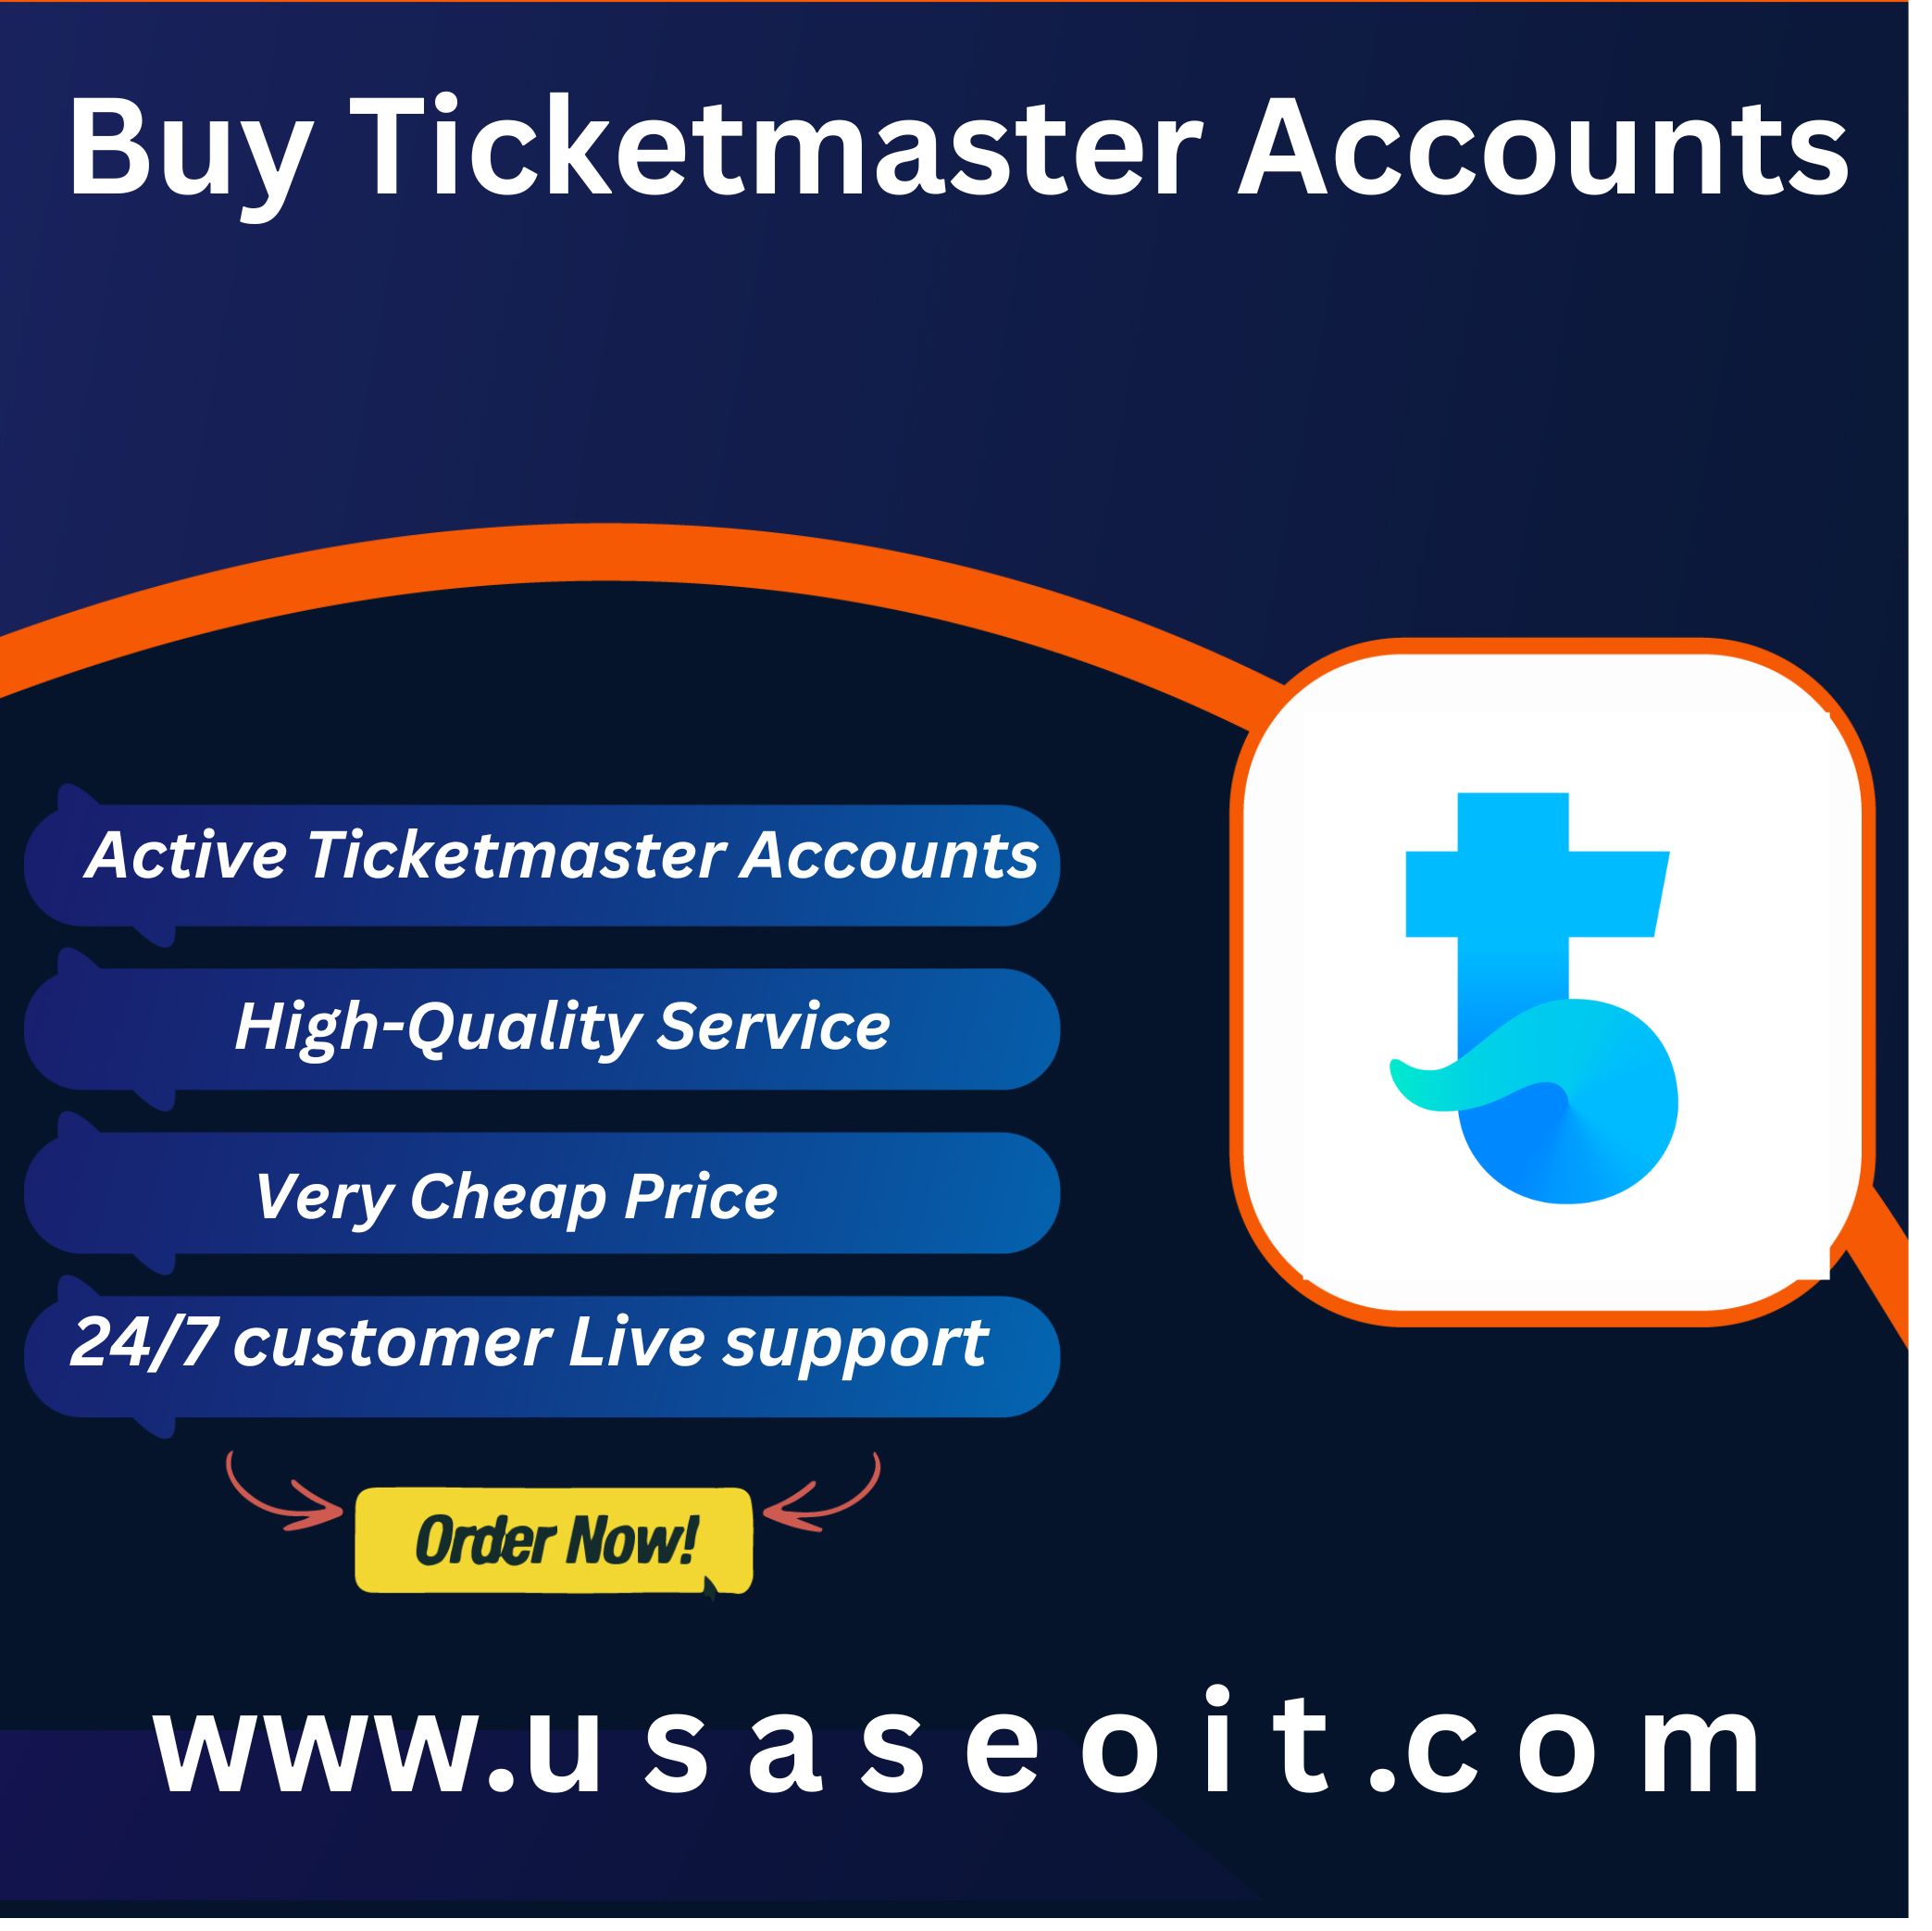 Buy Ticketmaster Accounts - USA SEO IT